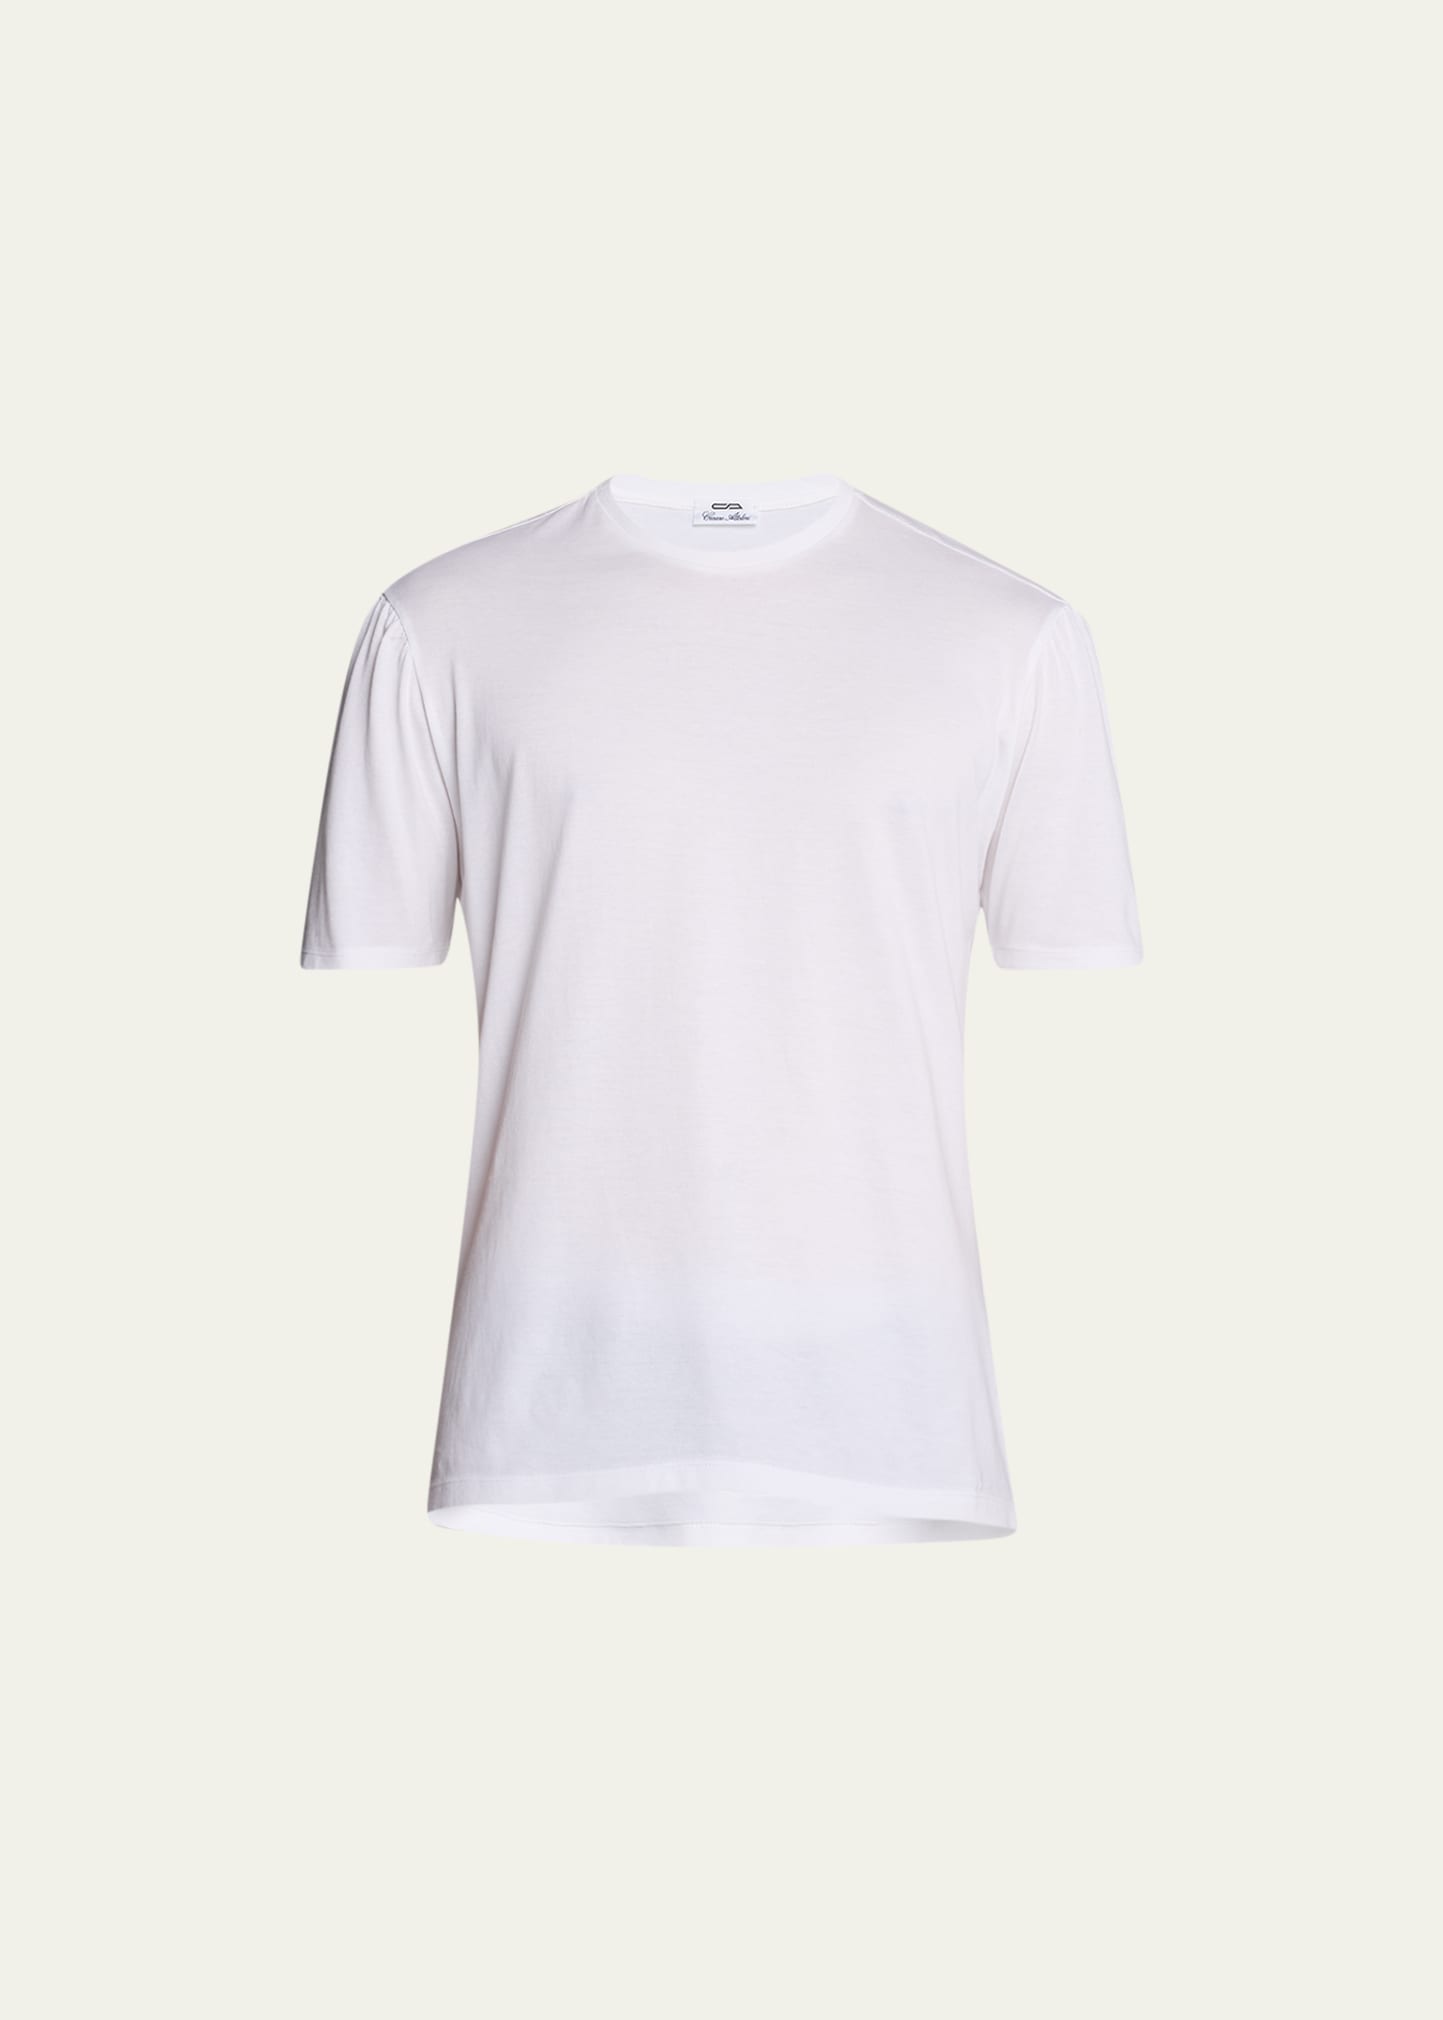 Cesare Attolini Men's Cotton Crew T-shirt In 002-white